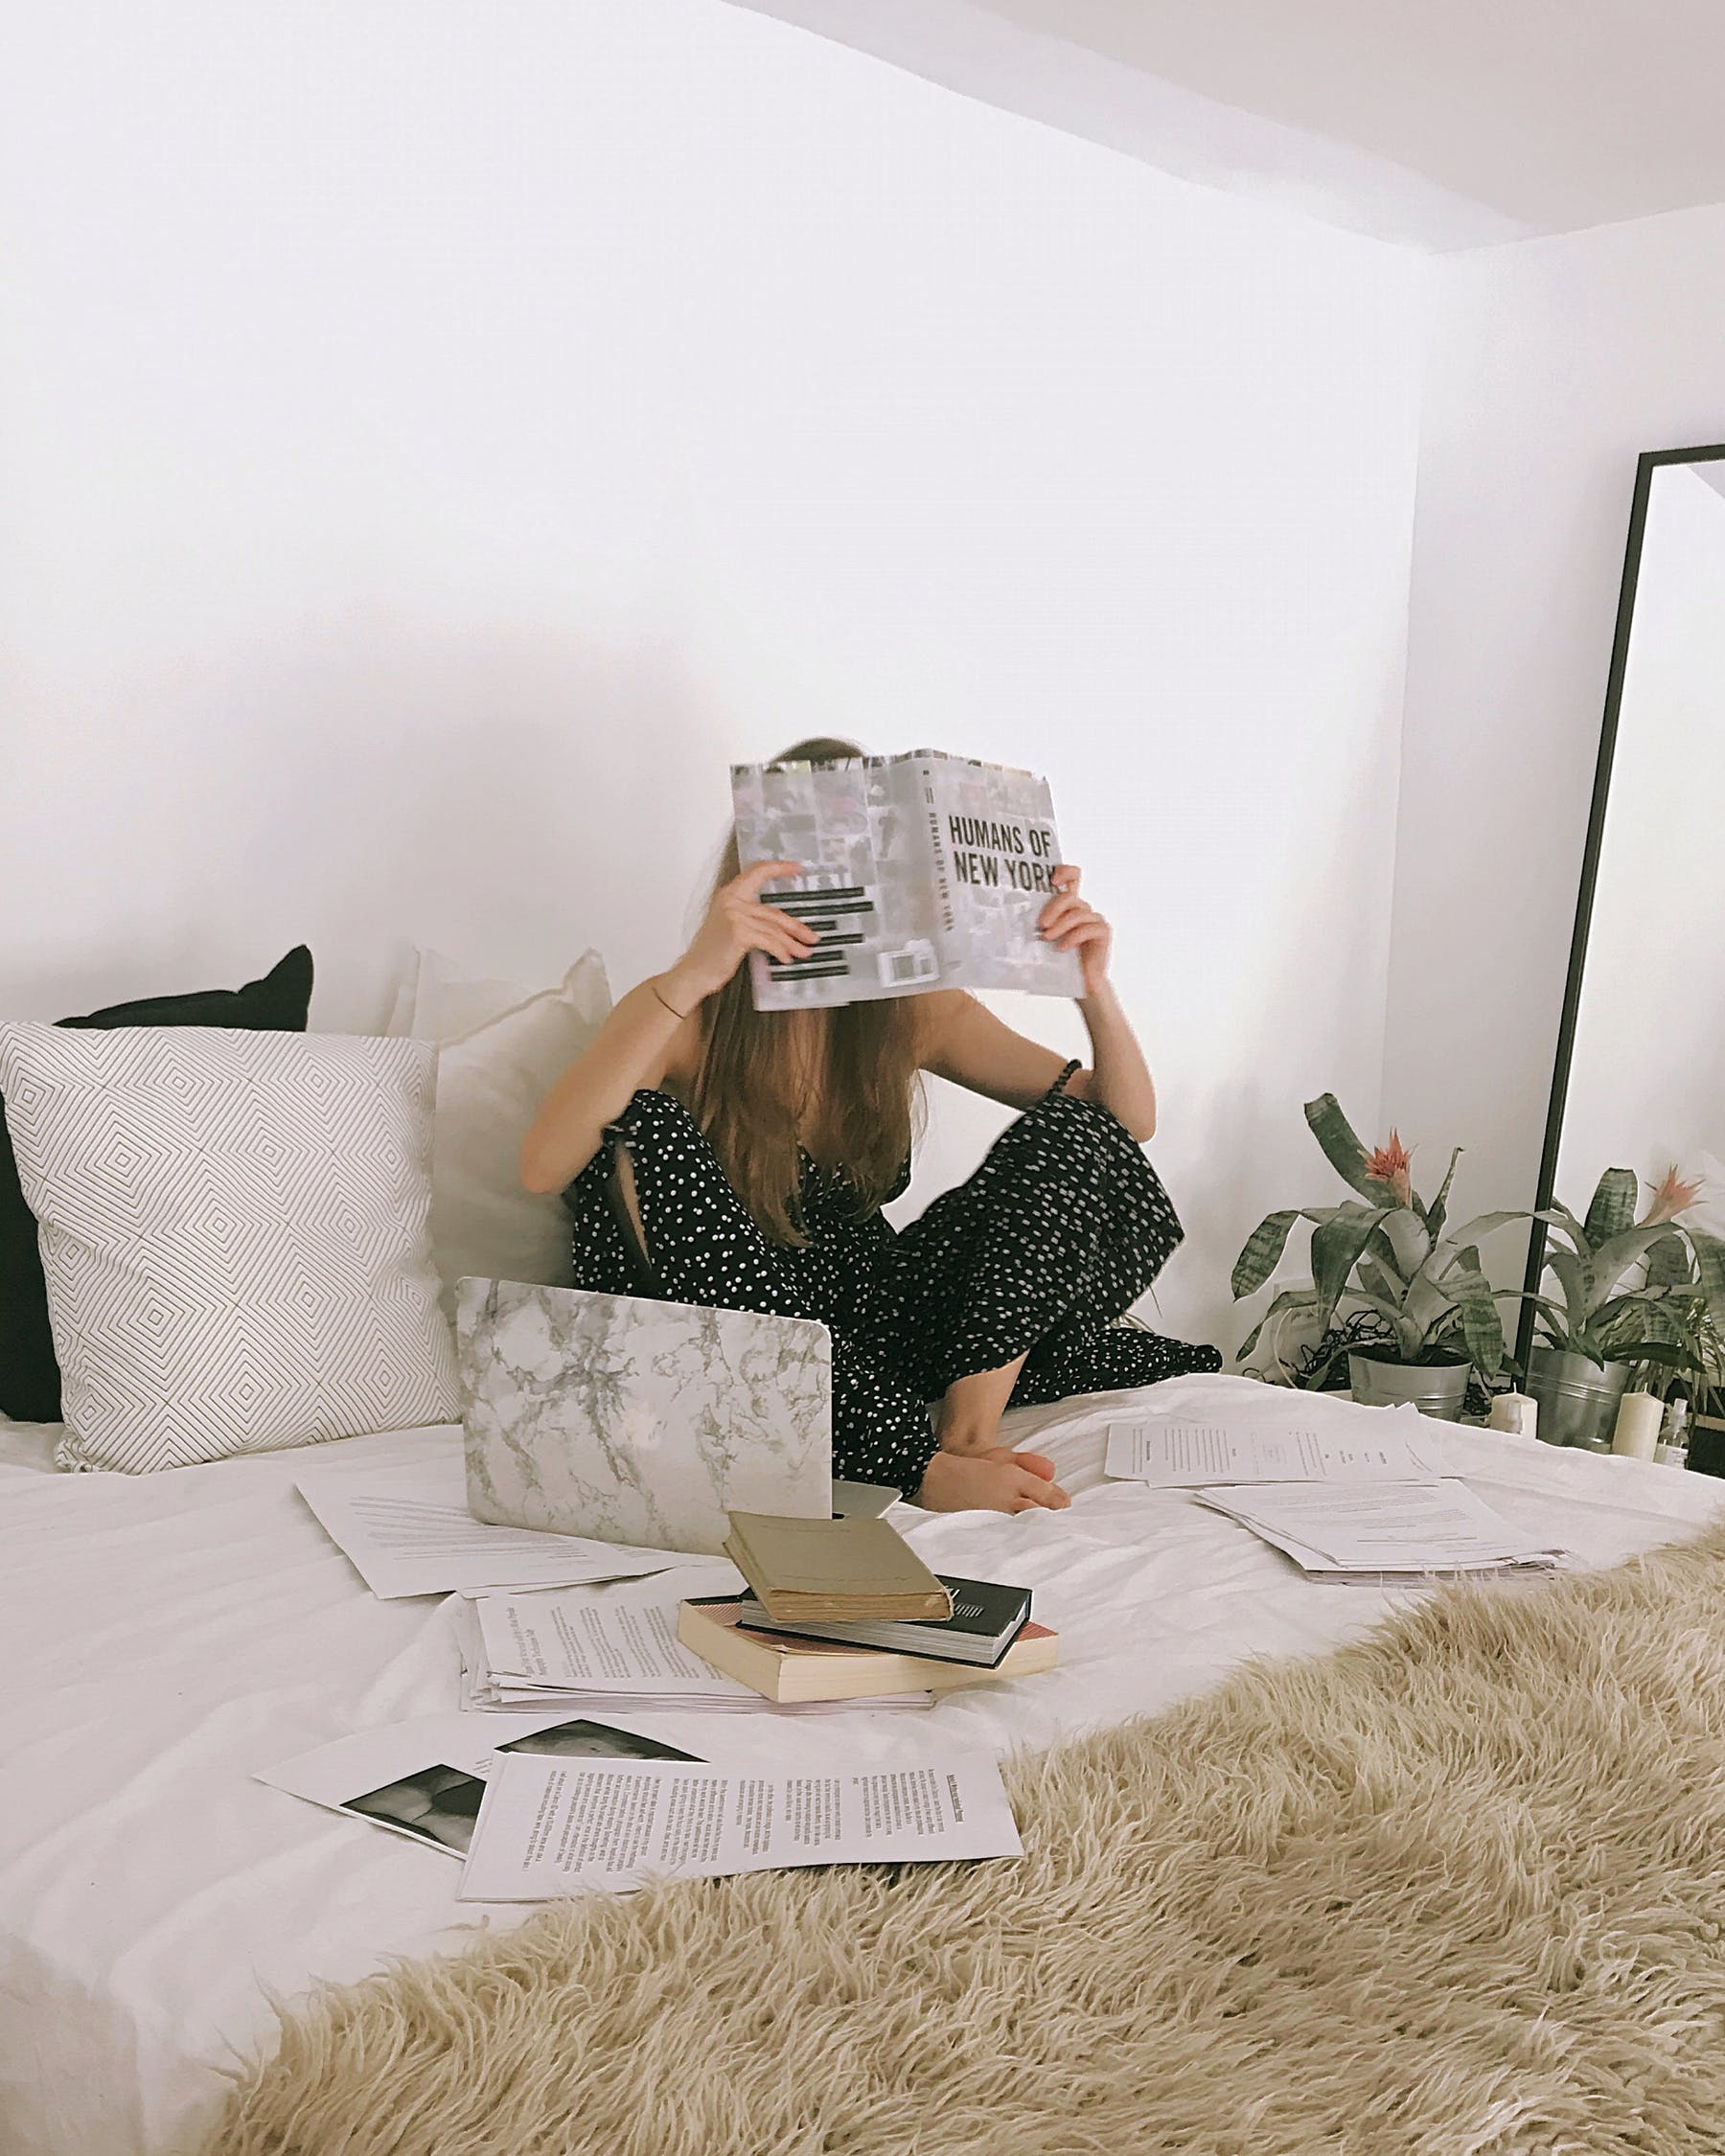 Kegiatan terakhir kamu bisa membaca buku habis sahur, waktu paling pas karena otak fresh dan lebih mudah berkonsentrasi penuh (Foto: pexels/Daria Shevtsova)